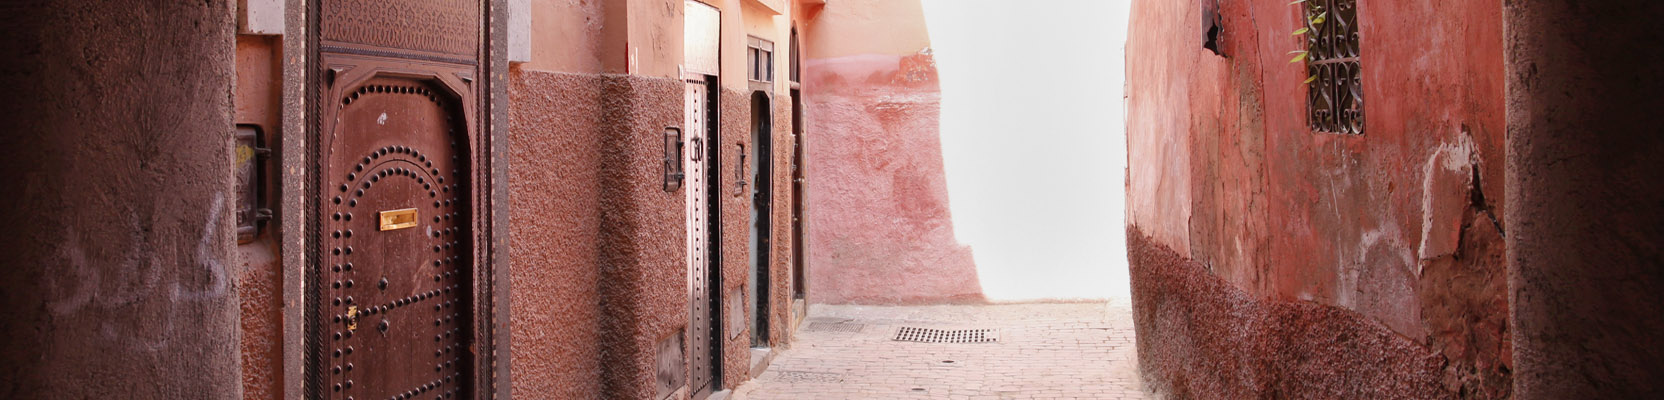 Rote Häuser Altstadt Marrakesch Marokko